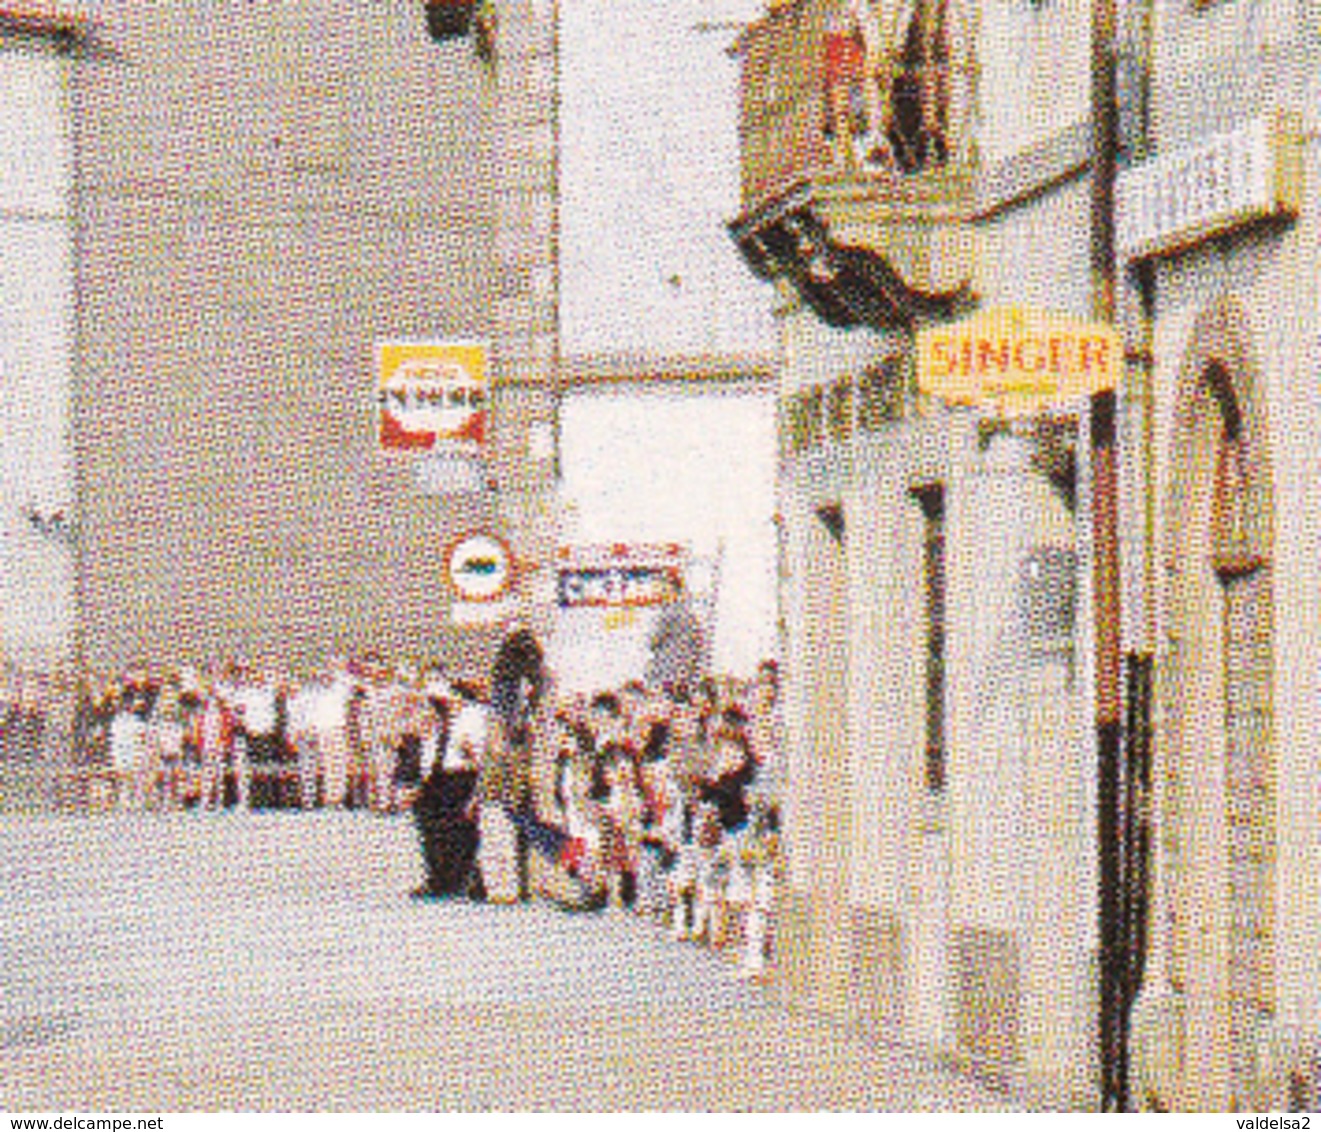 CASTELDELPIANO - GROSSETO - CORSE DEI CAVALLI - INSEGNA PUBBLICITARIA BIRRA PERONI - SINGER - 1978 - Taranto